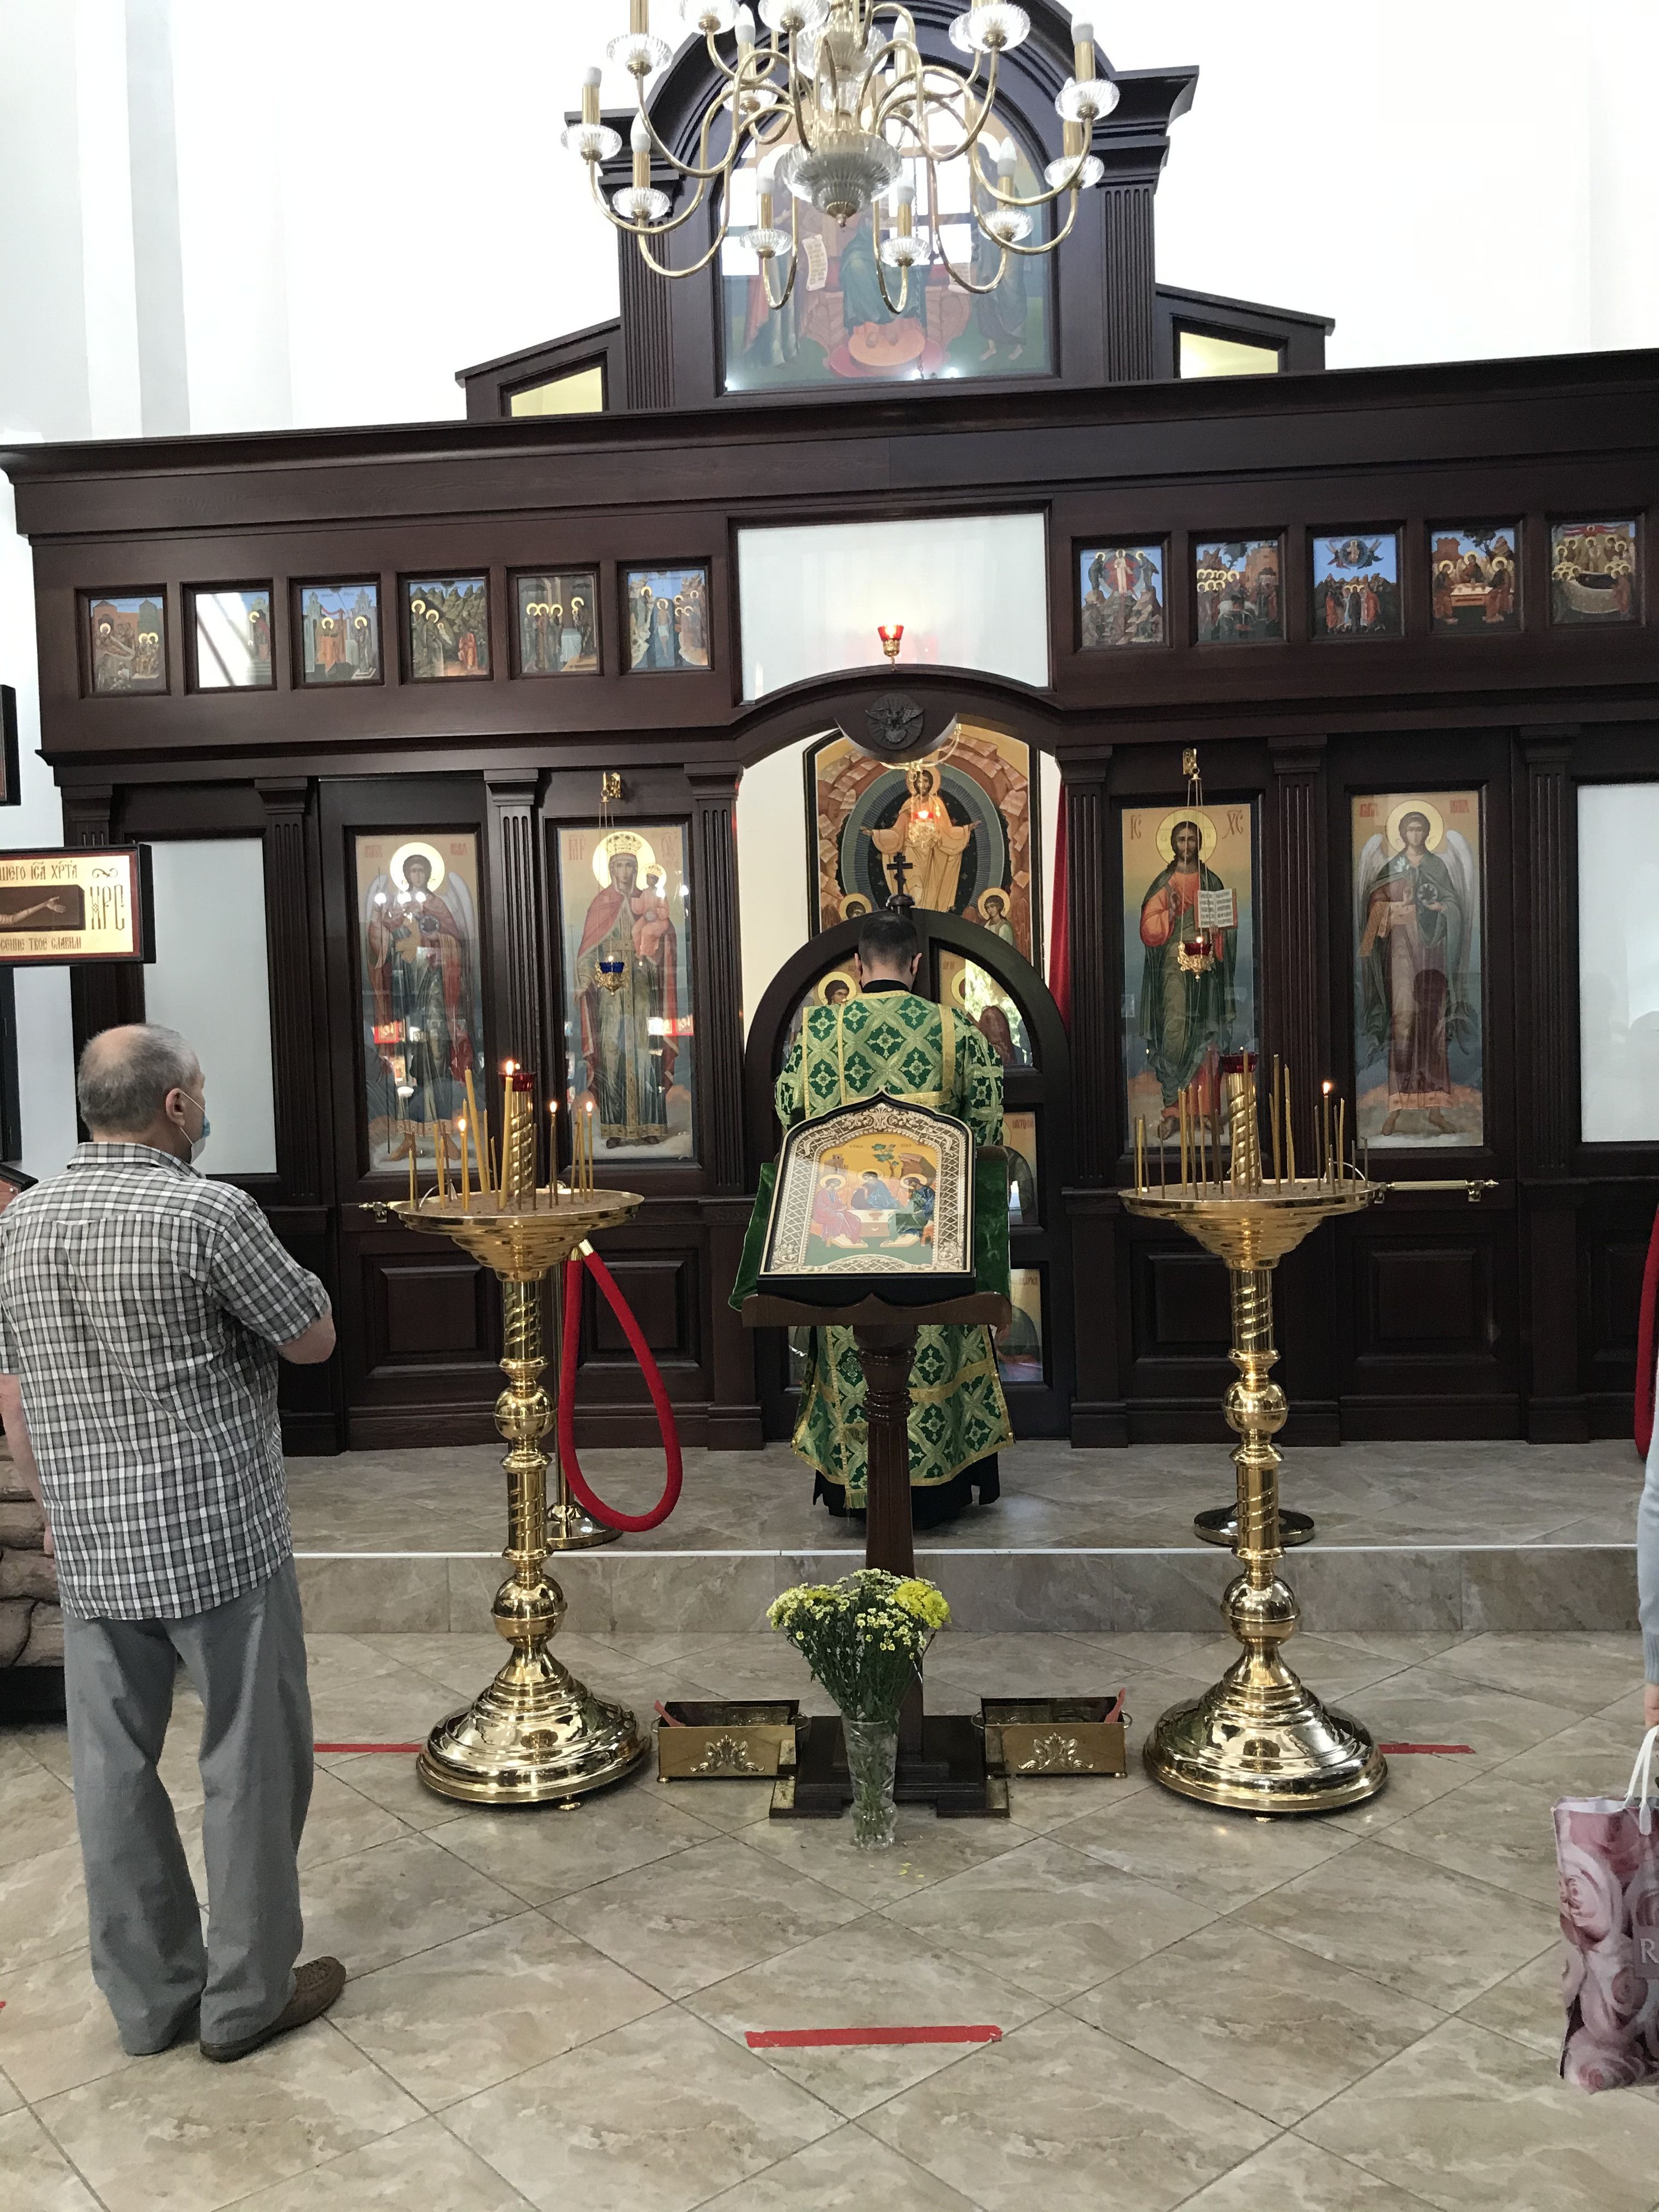 Православные христиане отмечают День Святой Троицы